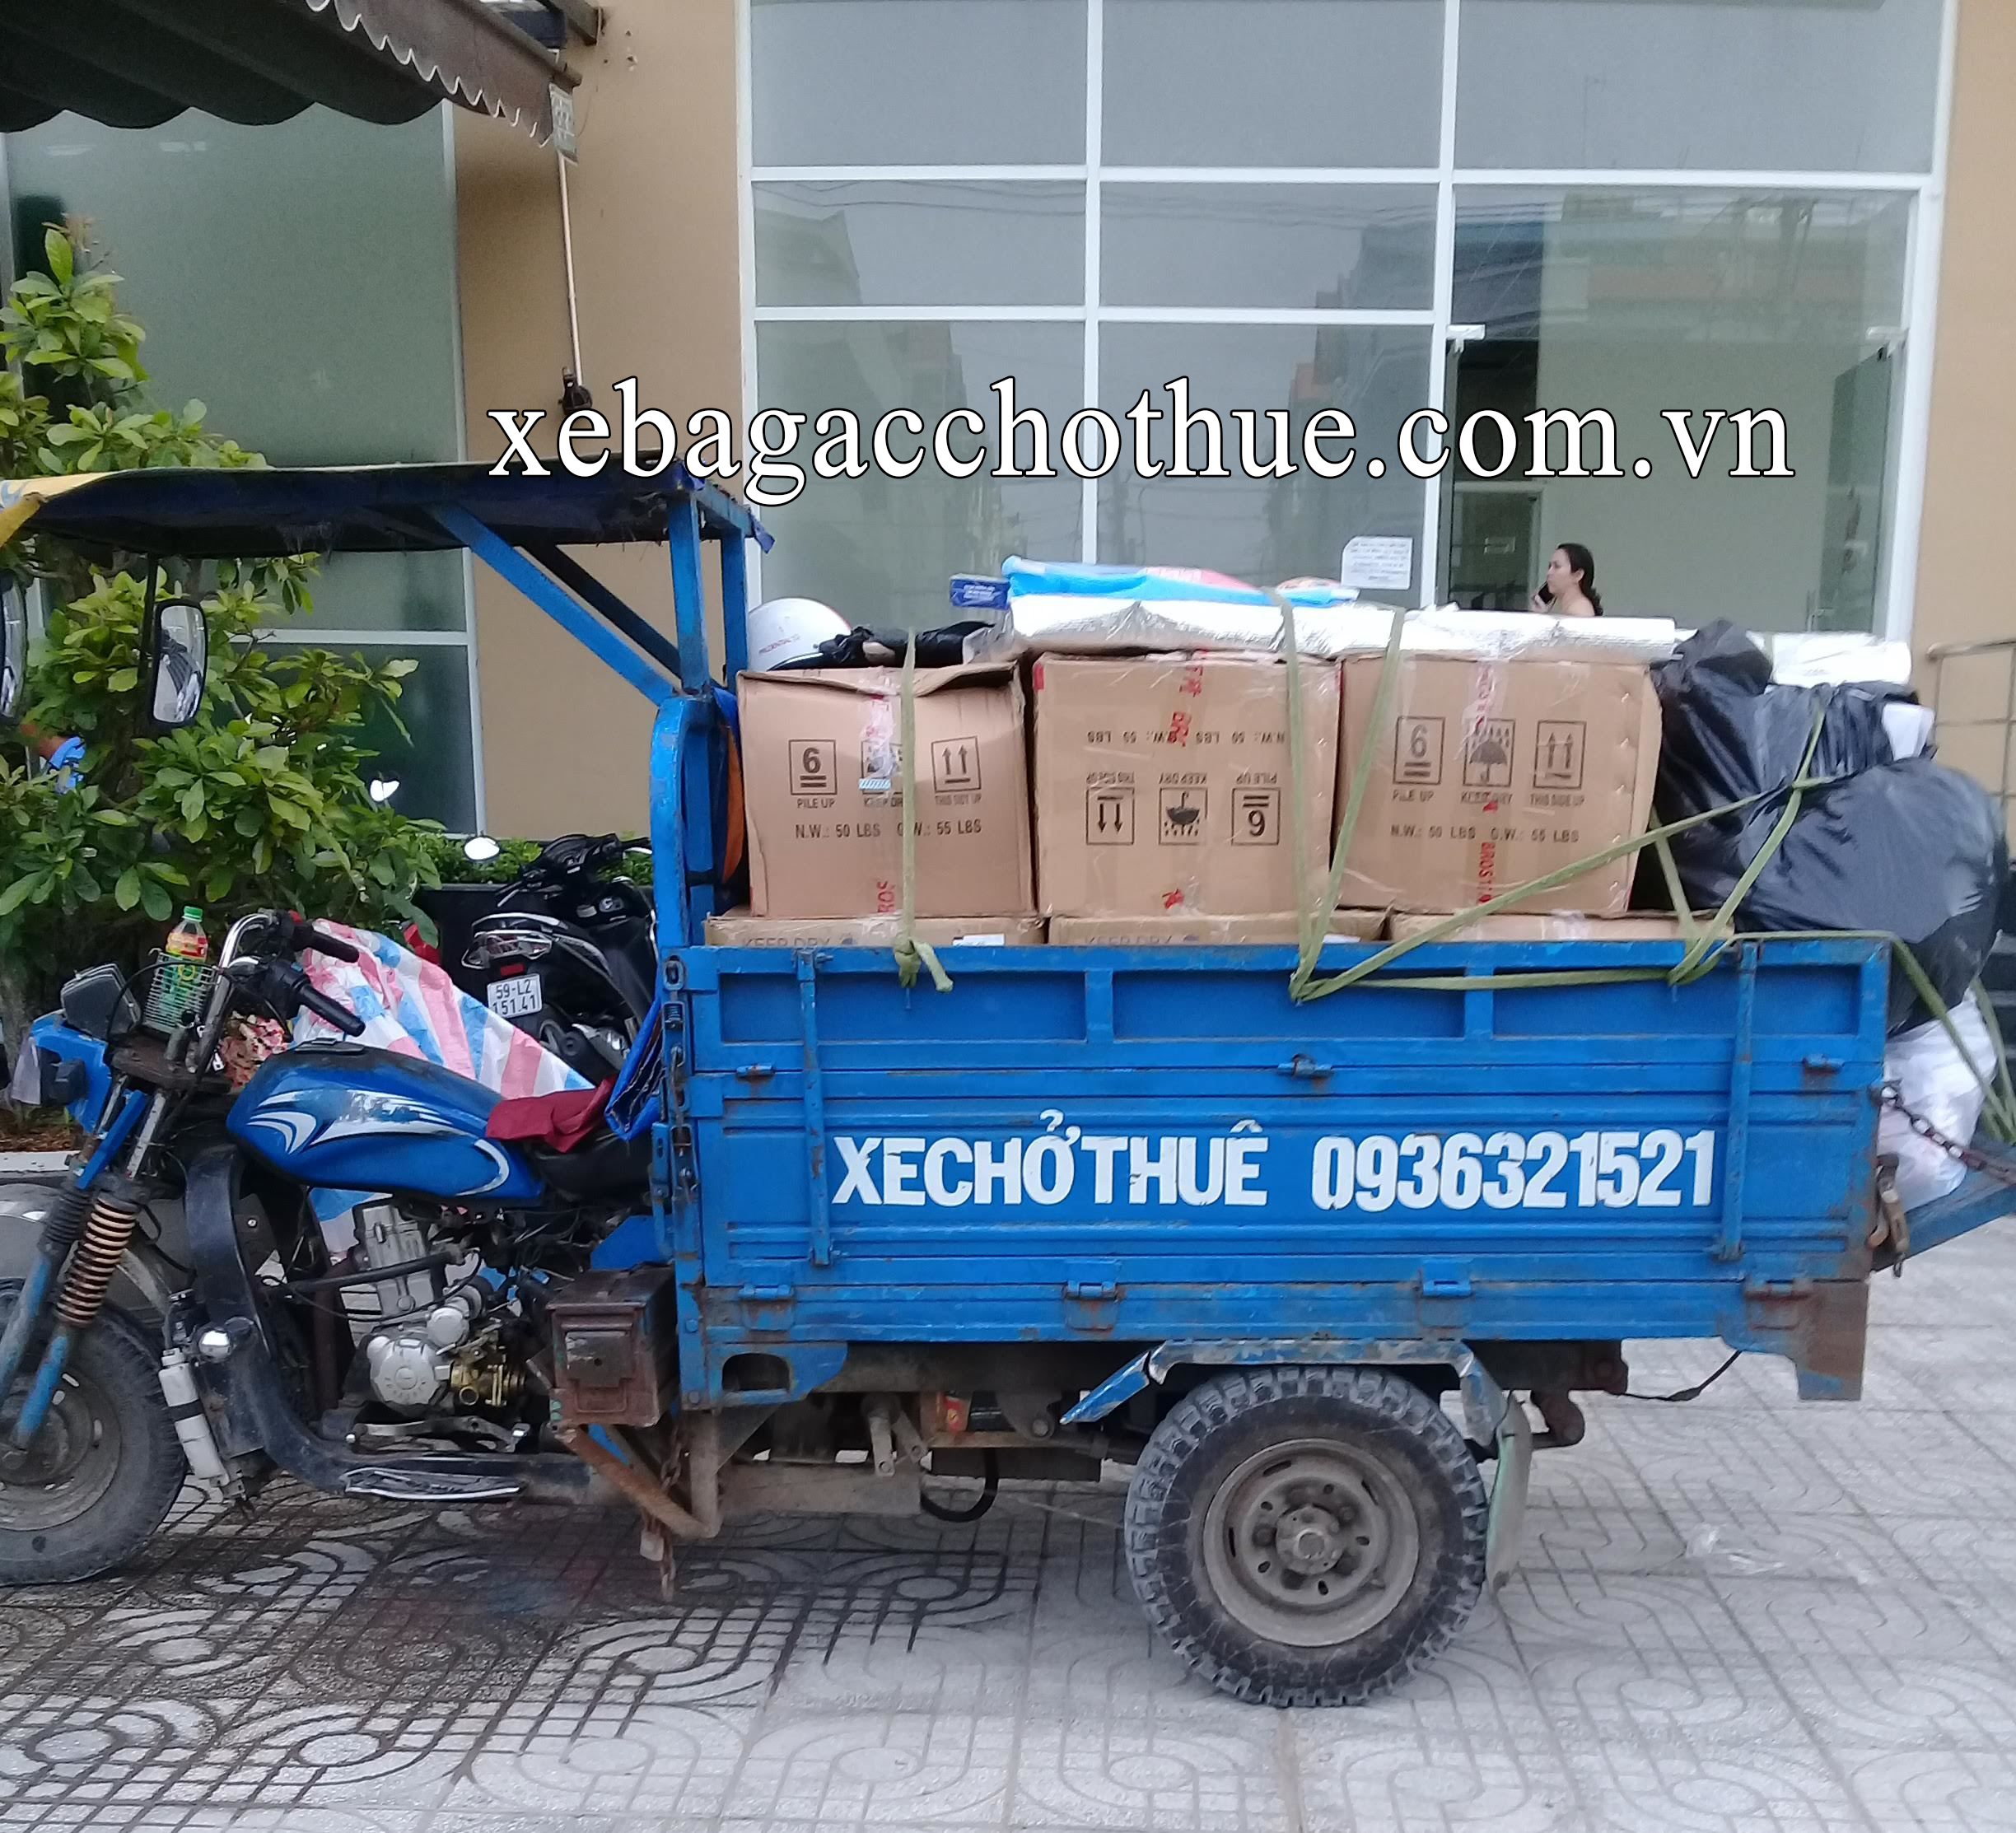  Dịch vụ xe ba gác chở thuê chất lượng giá rẻ tại Bình Thạnh